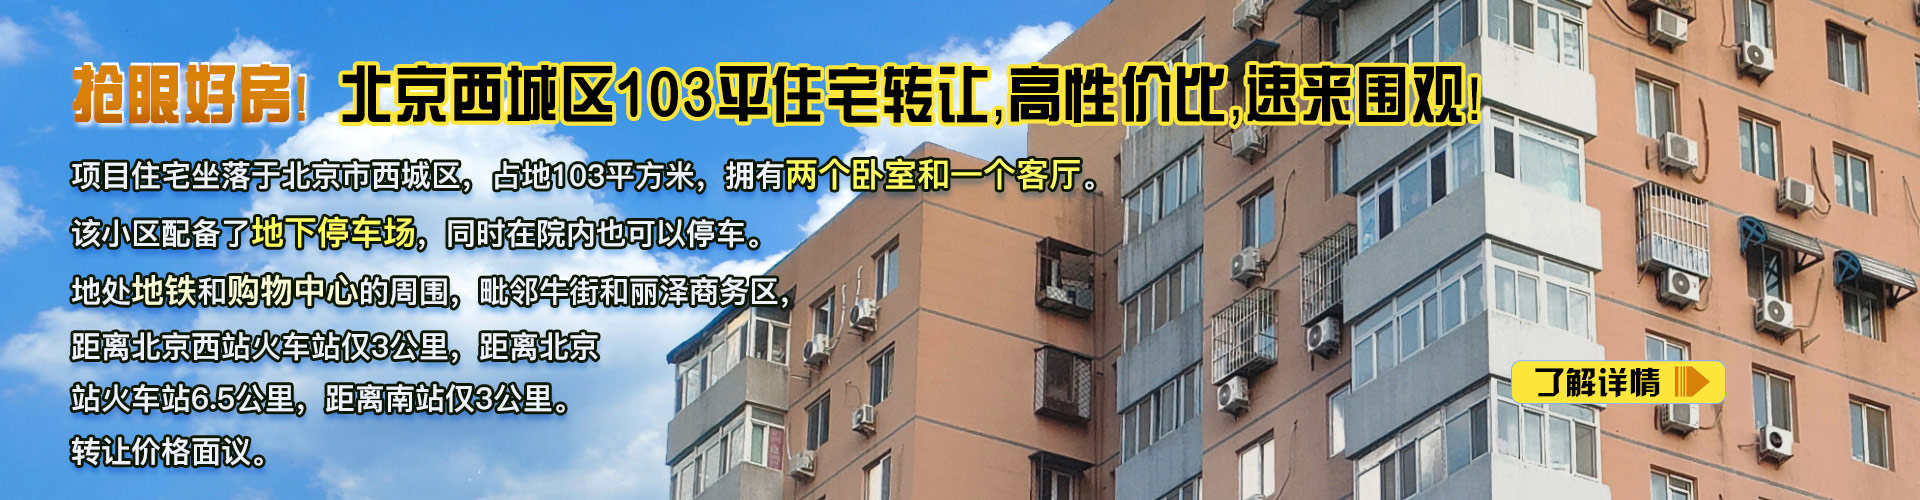 住宅|北京西城区103平住宅转让项目30QT-0513